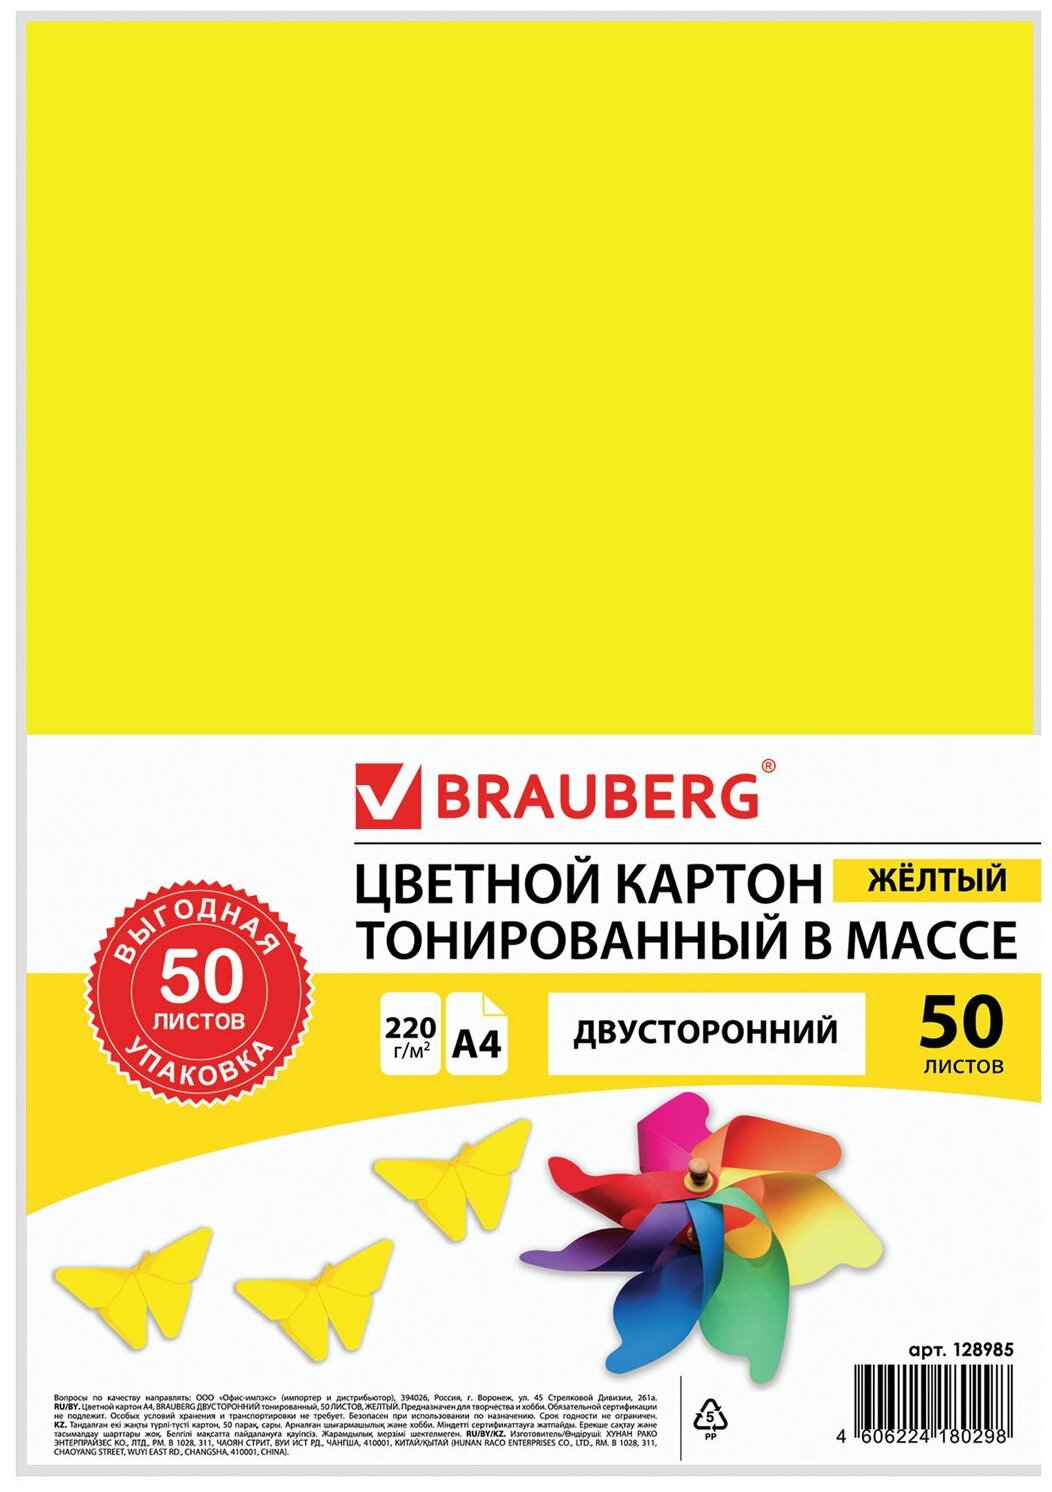 Картон цветной А4 тонированный В массе, 50 листов, желтый, 220г/м2, BRAUBERG, 210х297мм, 128985